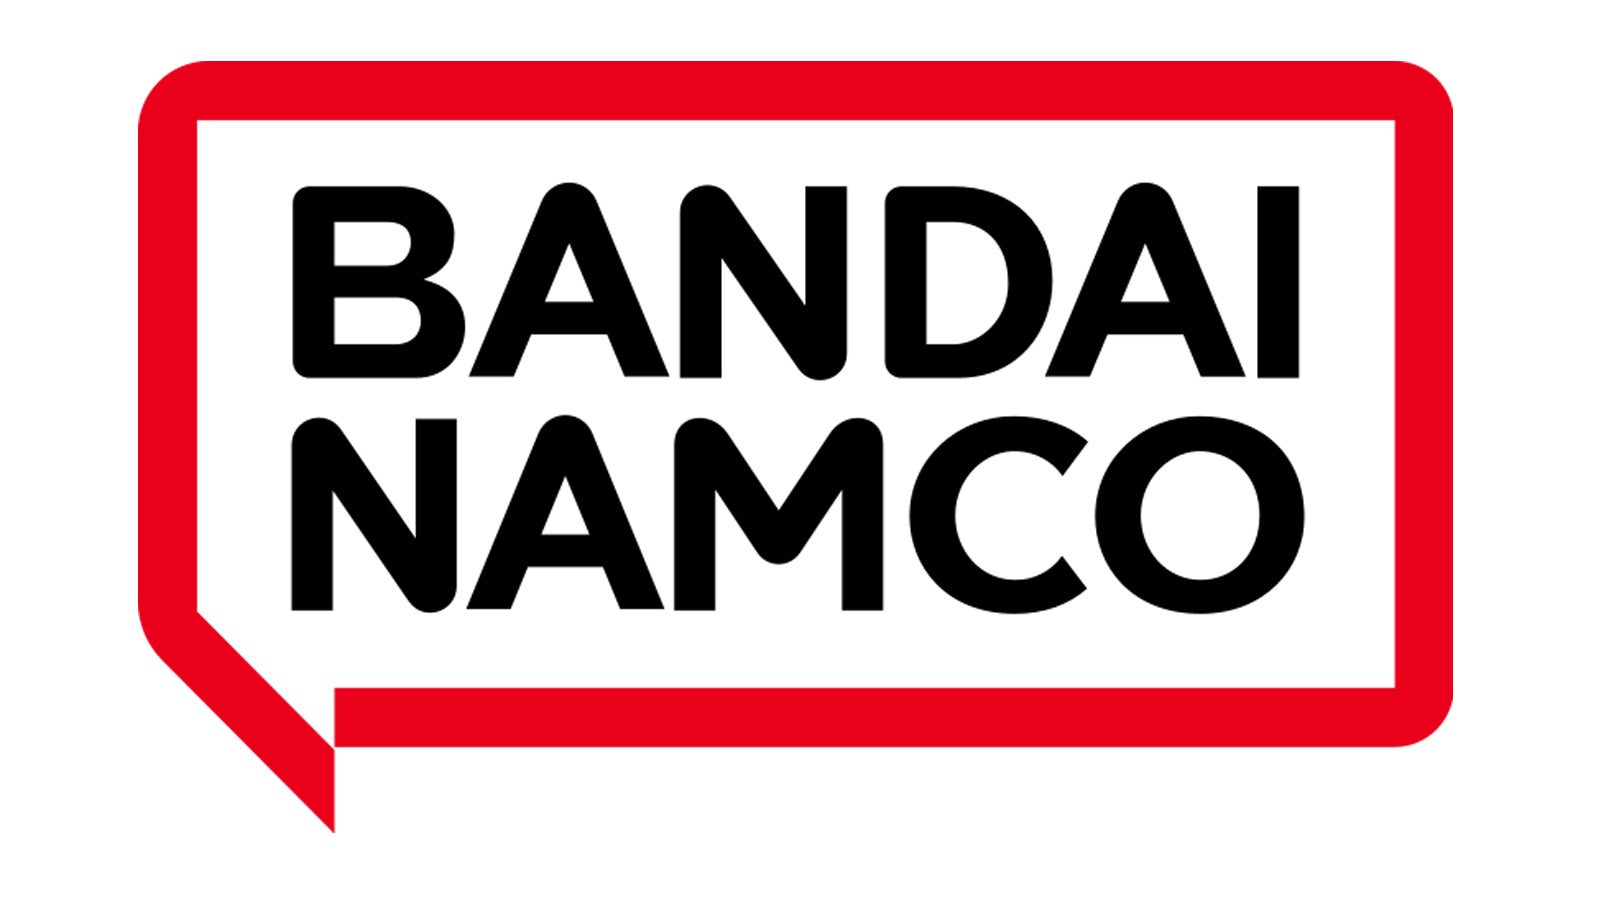 A editora de Elden Ring Bandai Namco confirma que foi hackeada, “investigando” potencial vazamento de informações de clientes